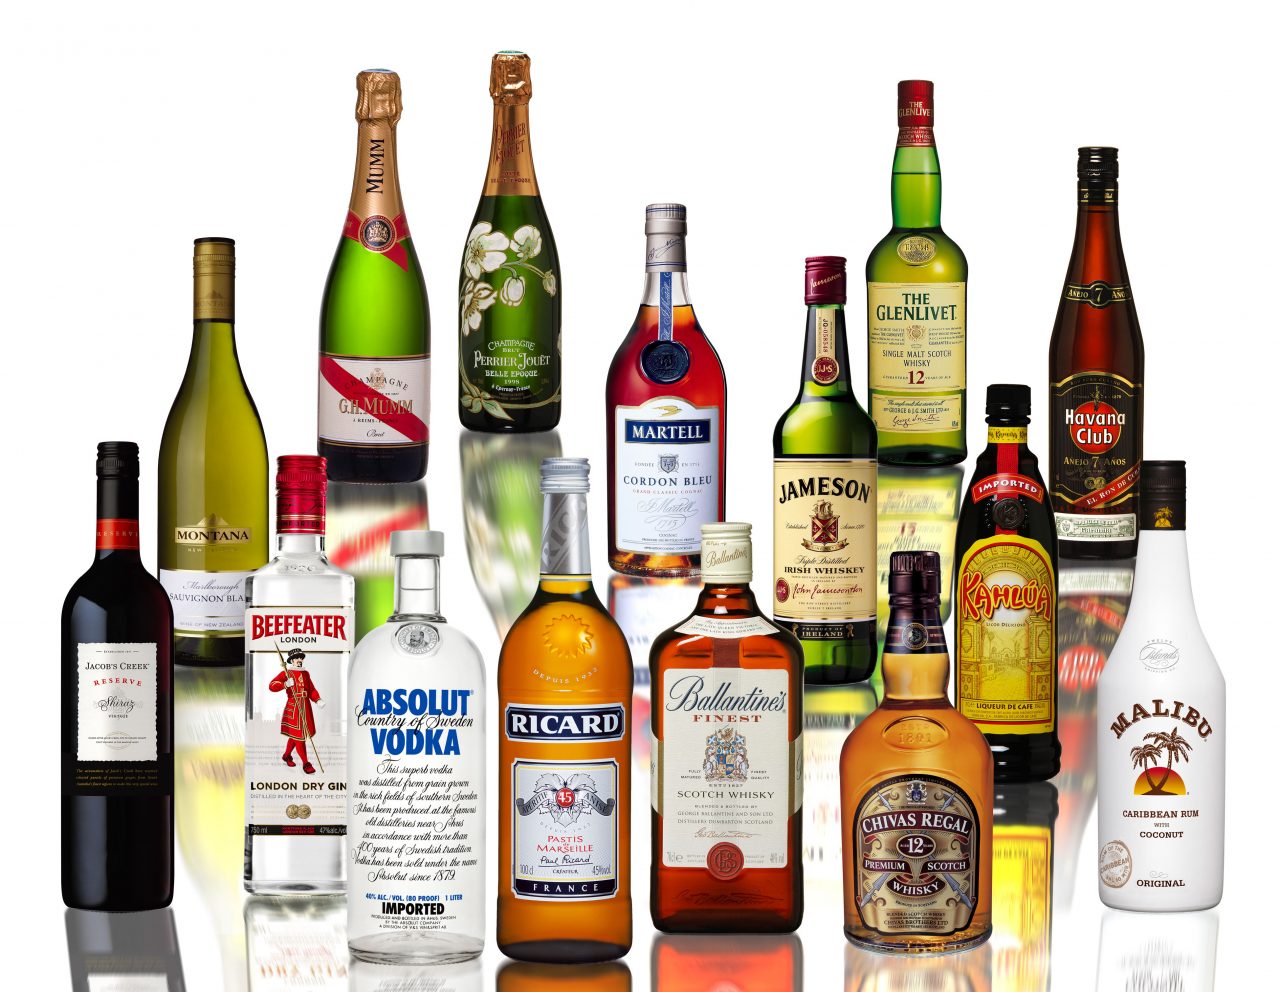 Pernod Ricard-ի խմիչքները մեծ պահանջարկ են վայելում ասիական շուկաներում